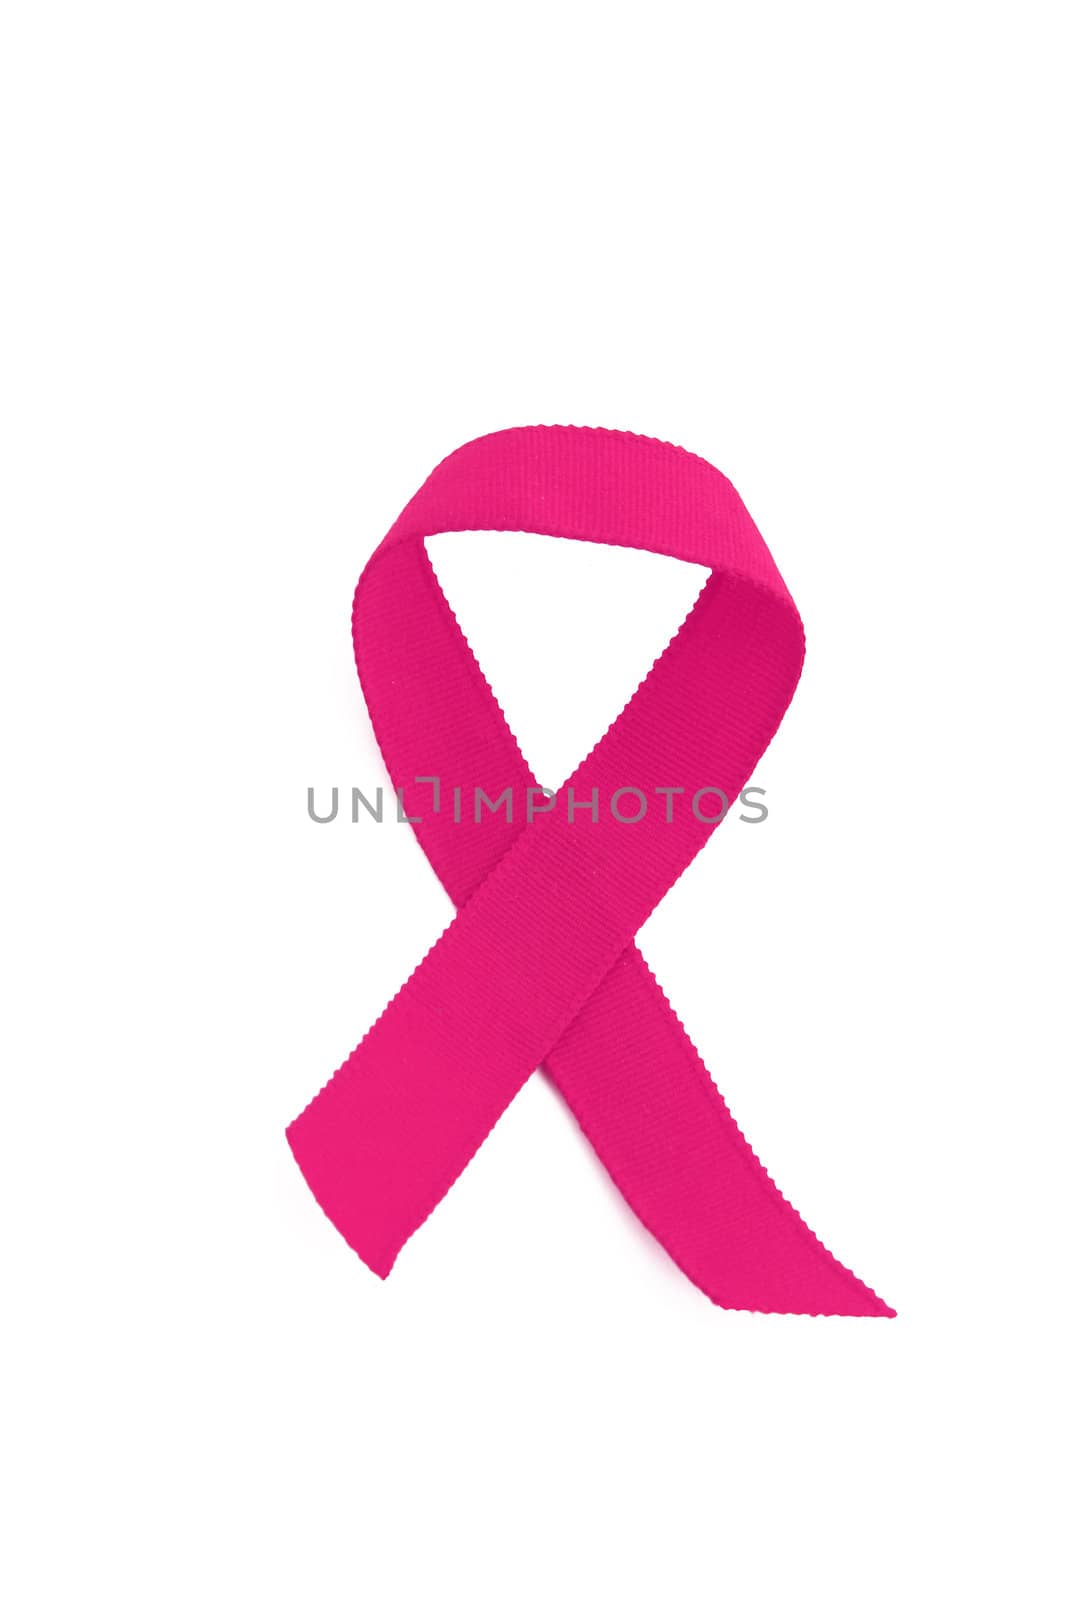 breast cancer ribbon by Brightdawn